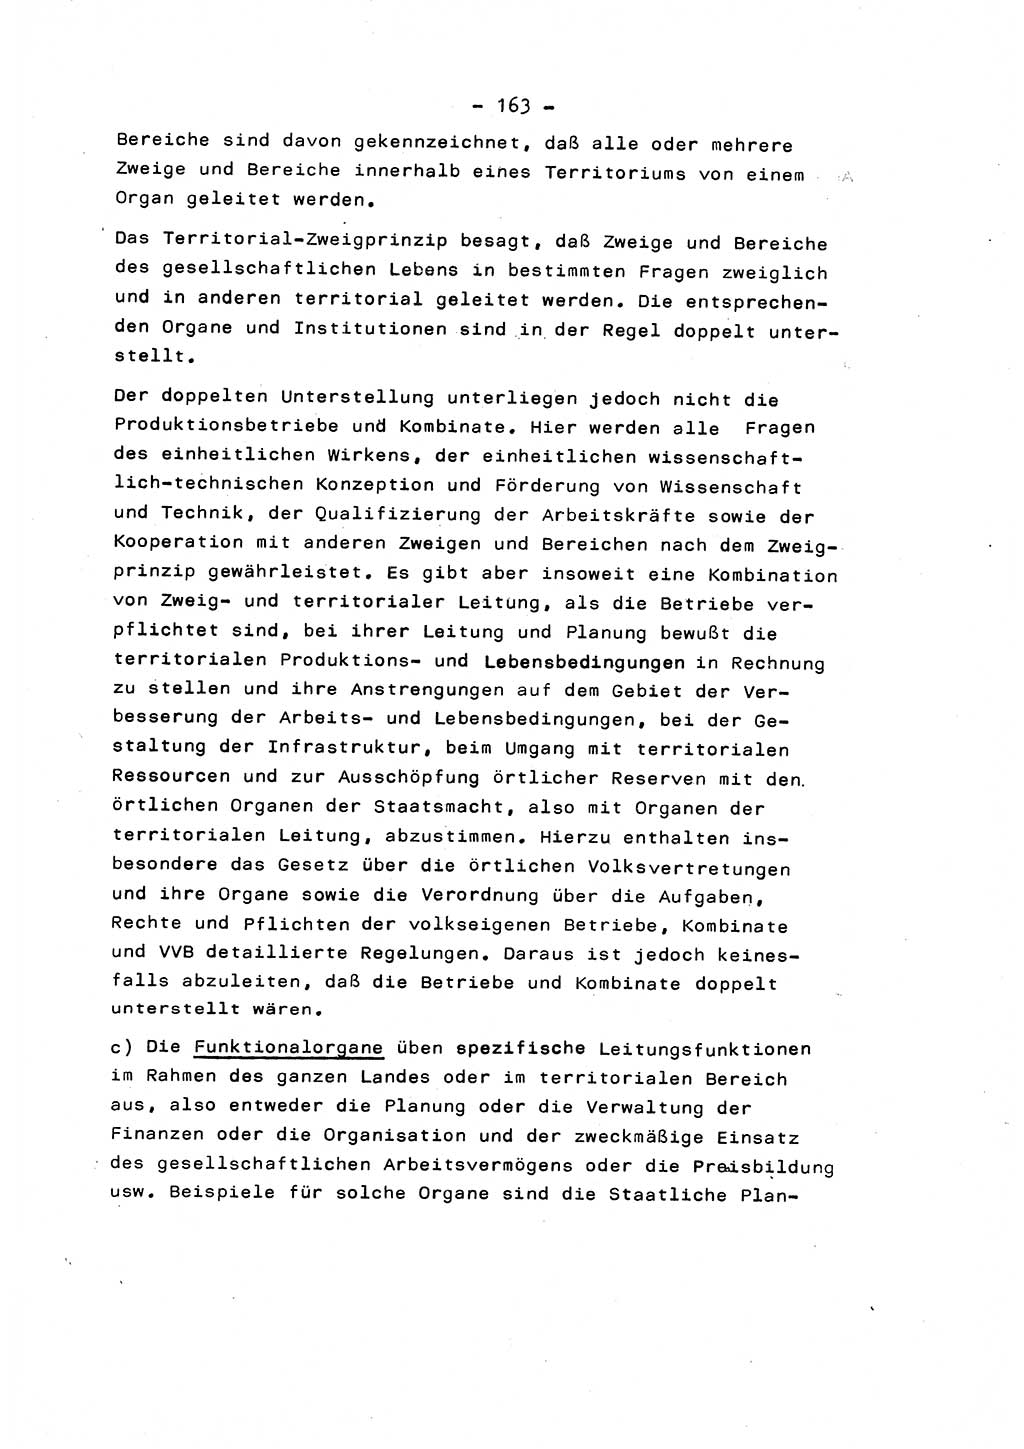 Marxistisch-leninistische Staats- und Rechtstheorie [Deutsche Demokratische Republik (DDR)] 1975, Seite 163 (ML St.-R.-Th. DDR 1975, S. 163)